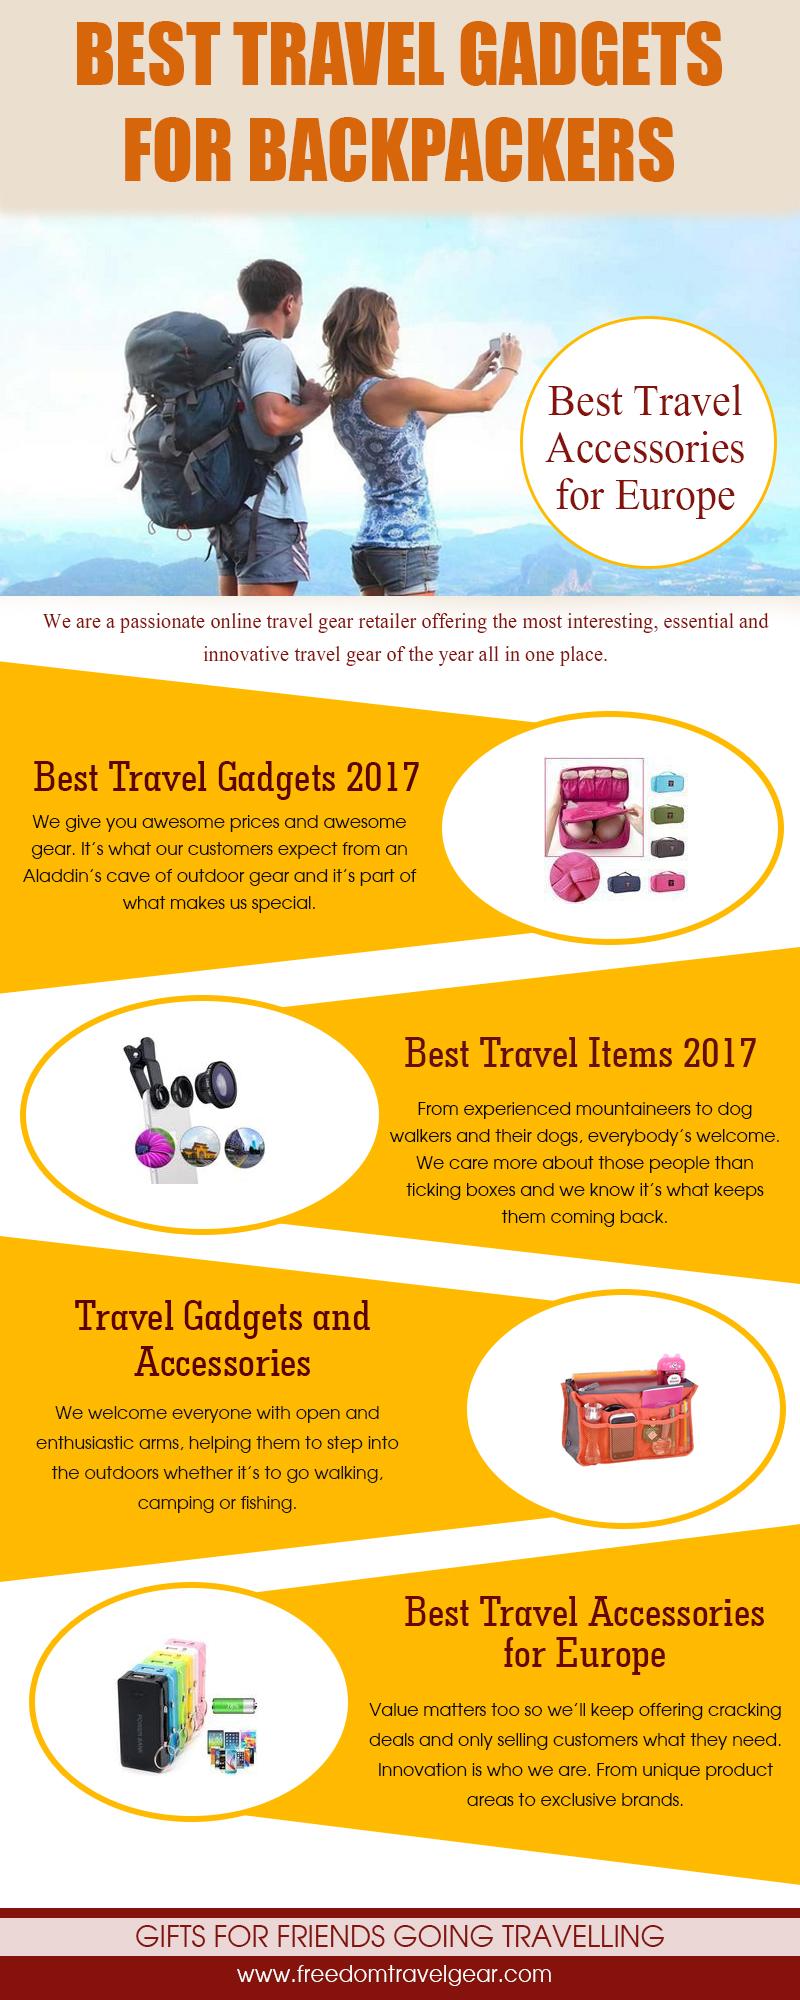 Best Travel Gadgets Under $50